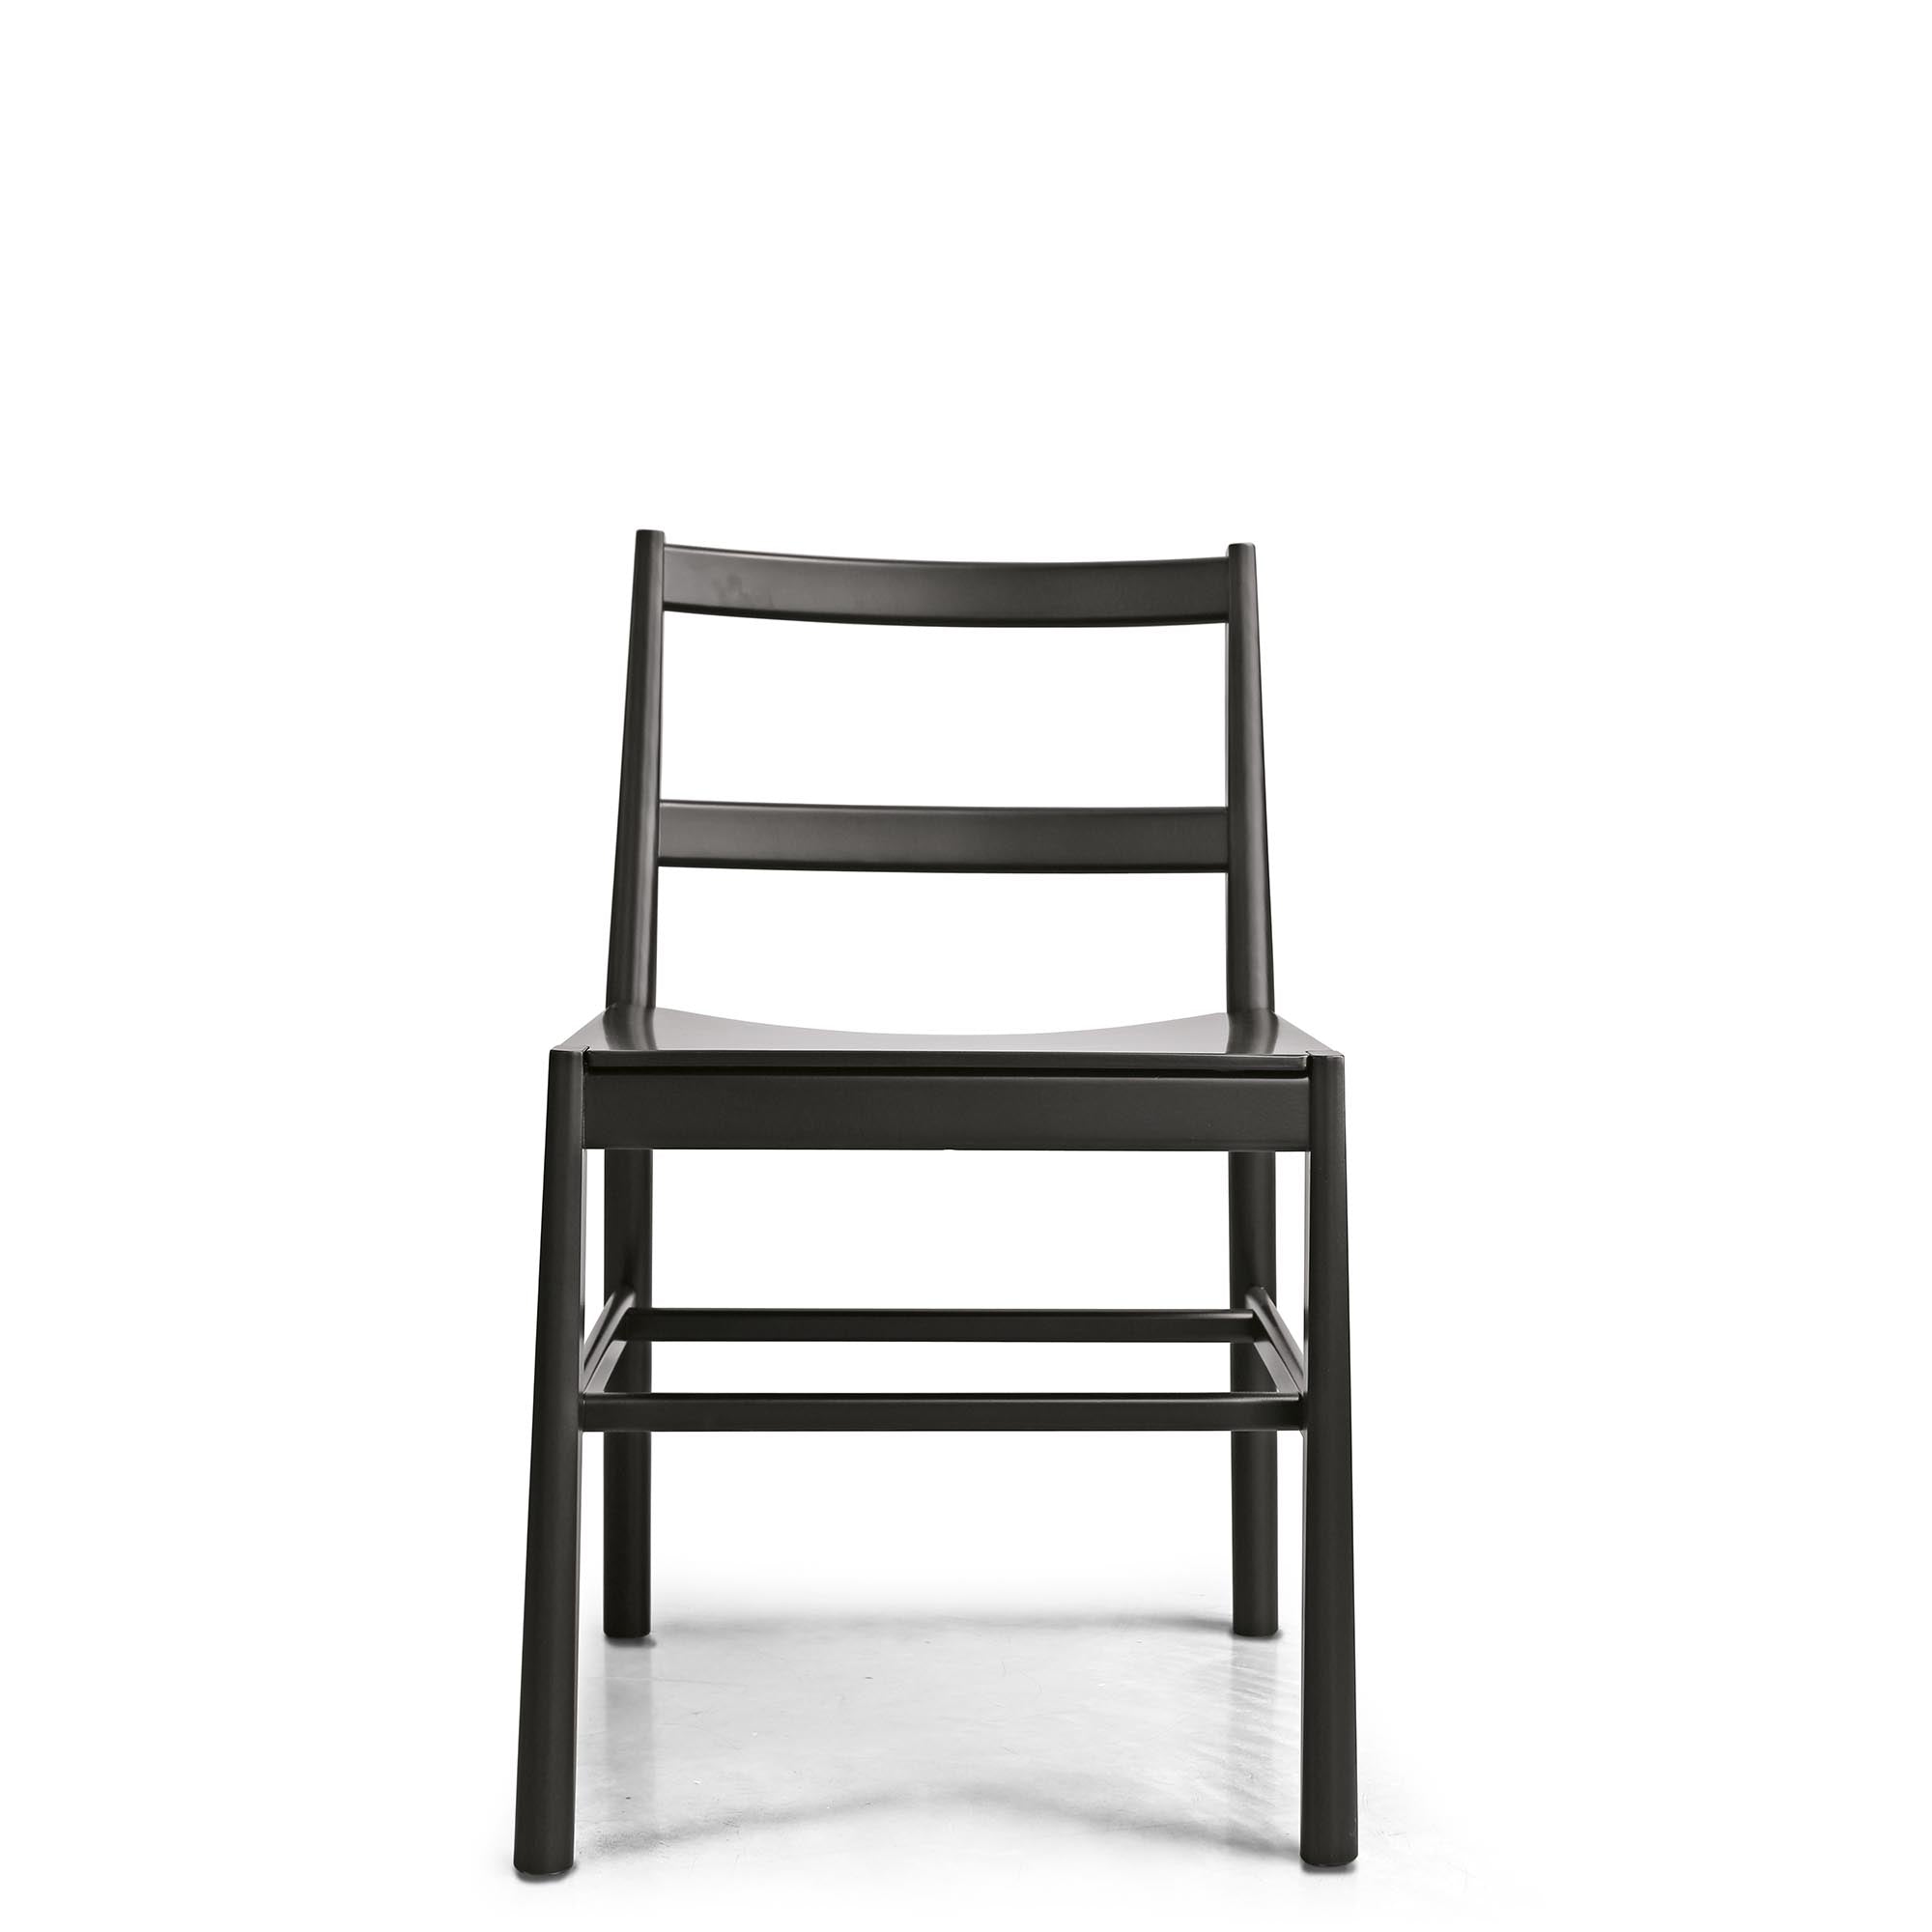 JULIE LE Chair beech wood frame, black colour